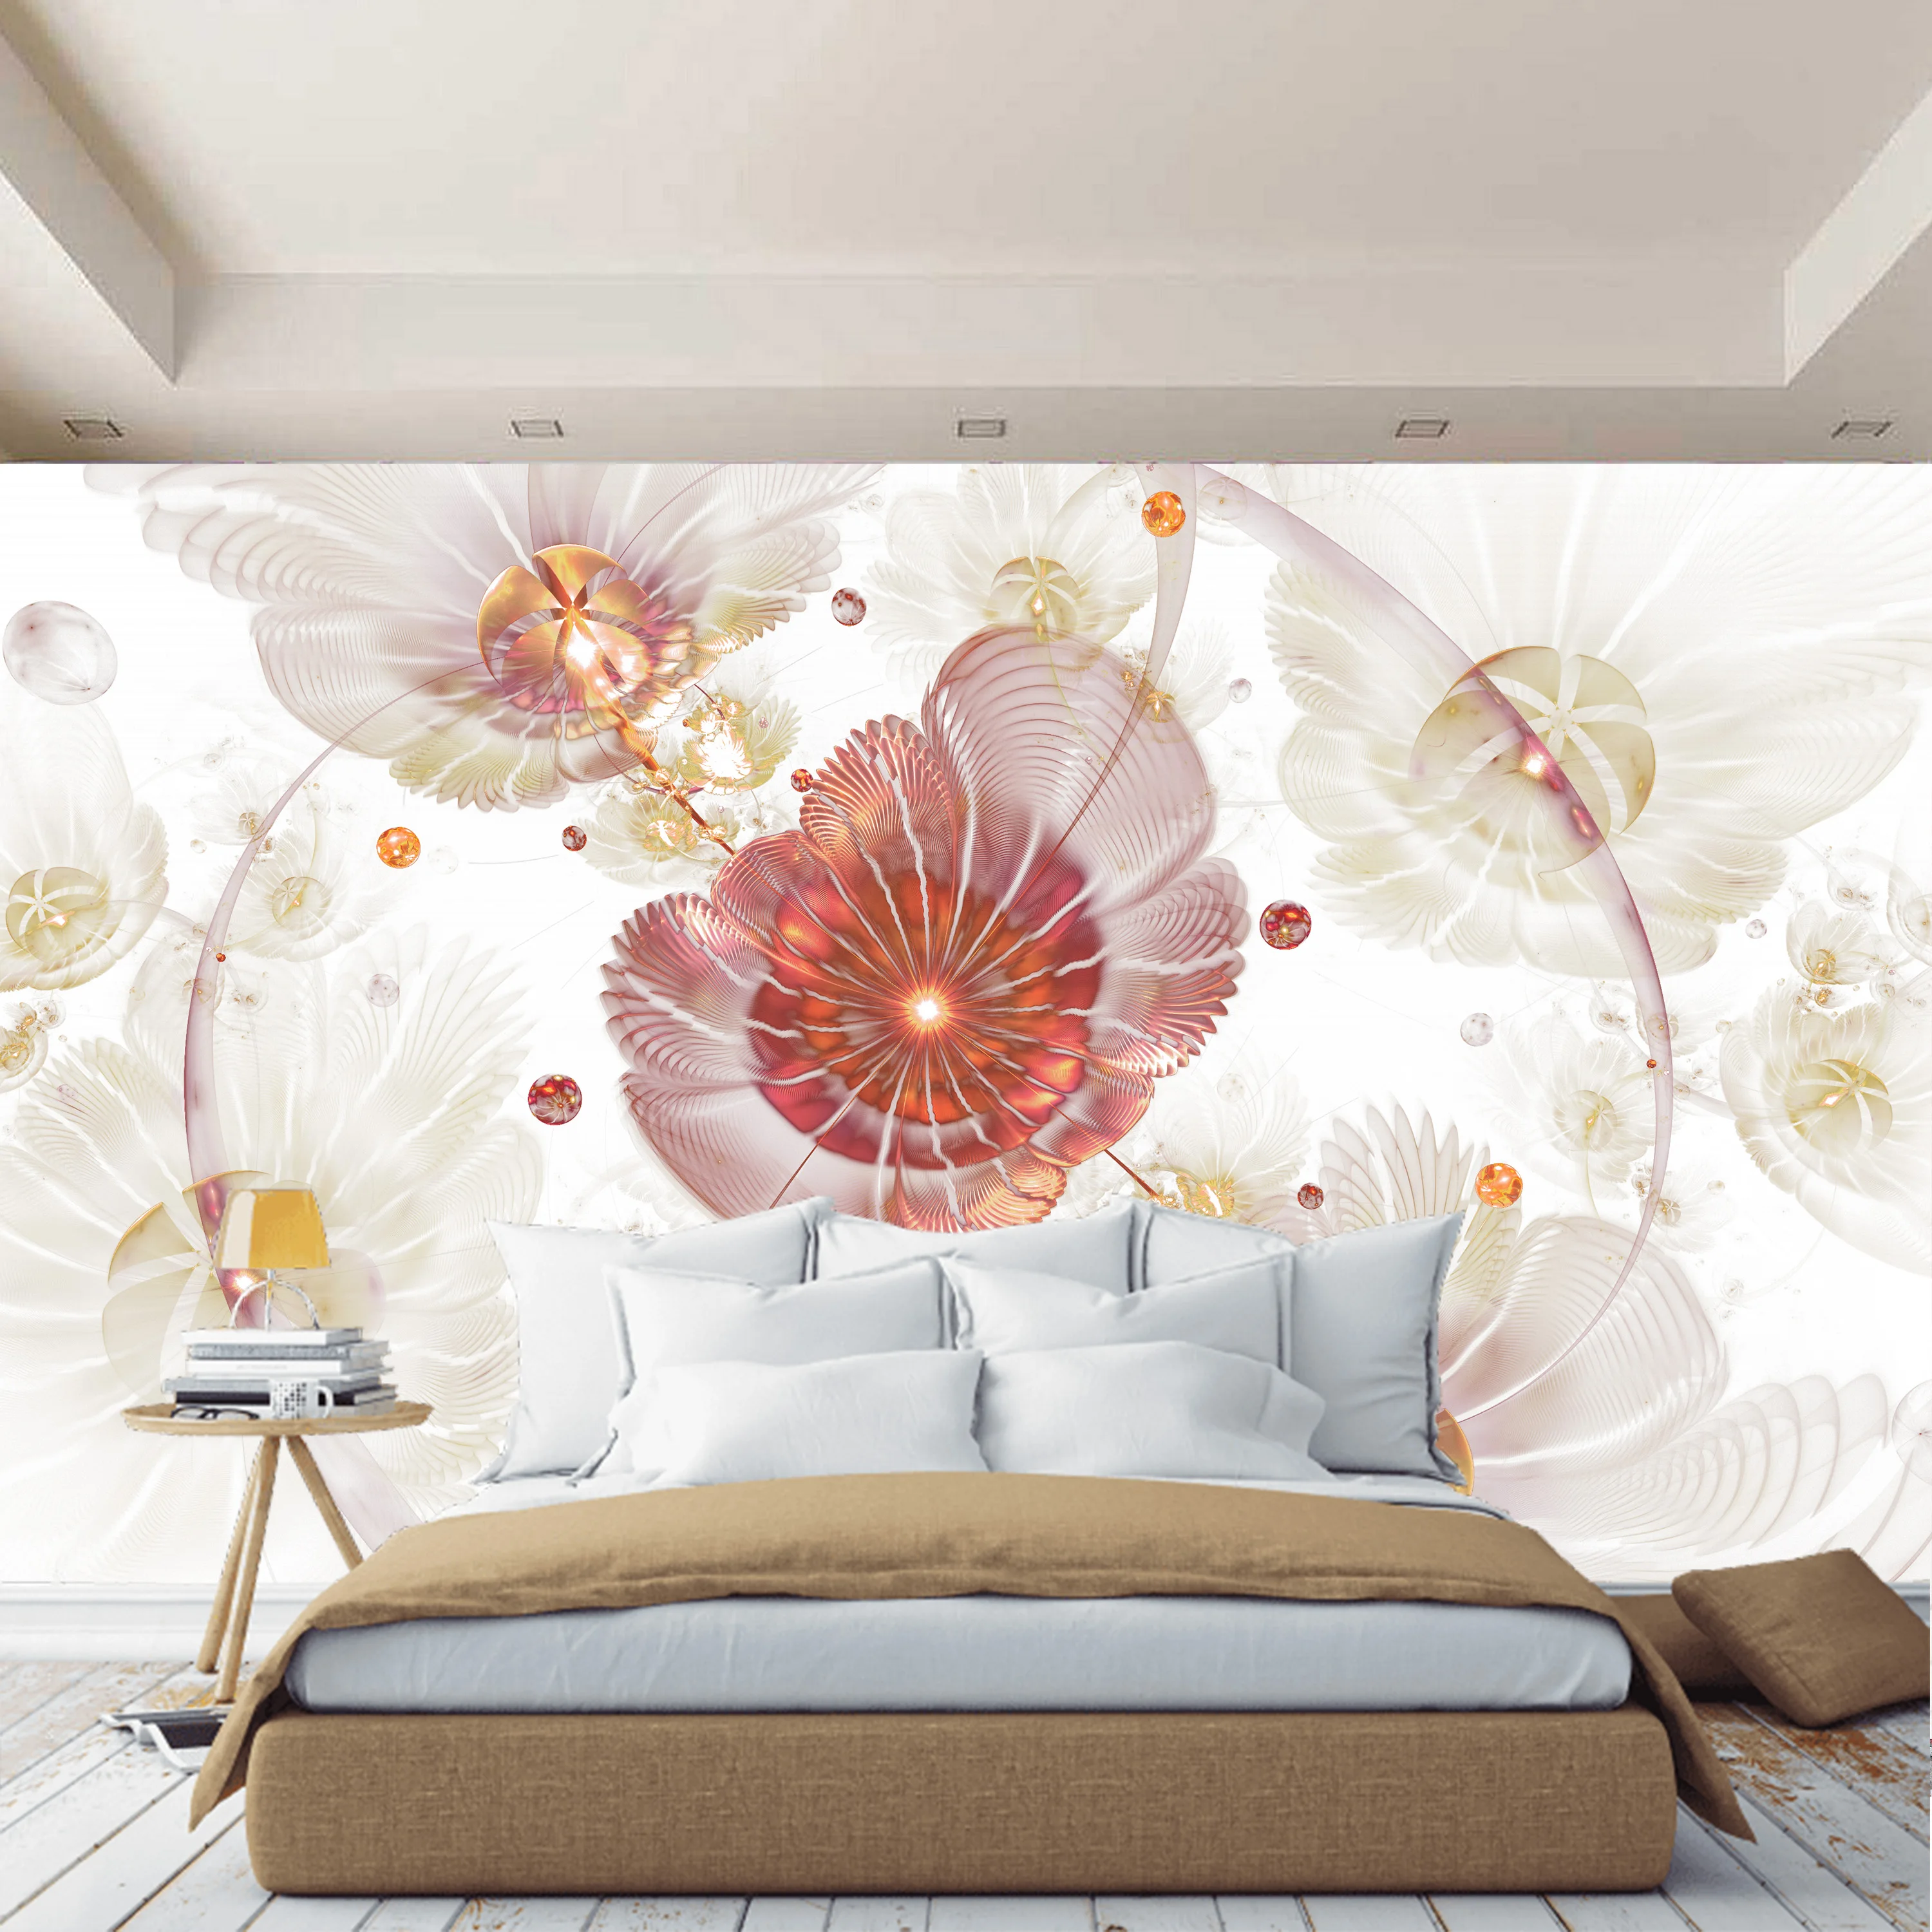 3D steno stensko povzetek cvetje ozadje za predsoba, kuhinja, spalnica, vrtec, steno stensko širi prostor